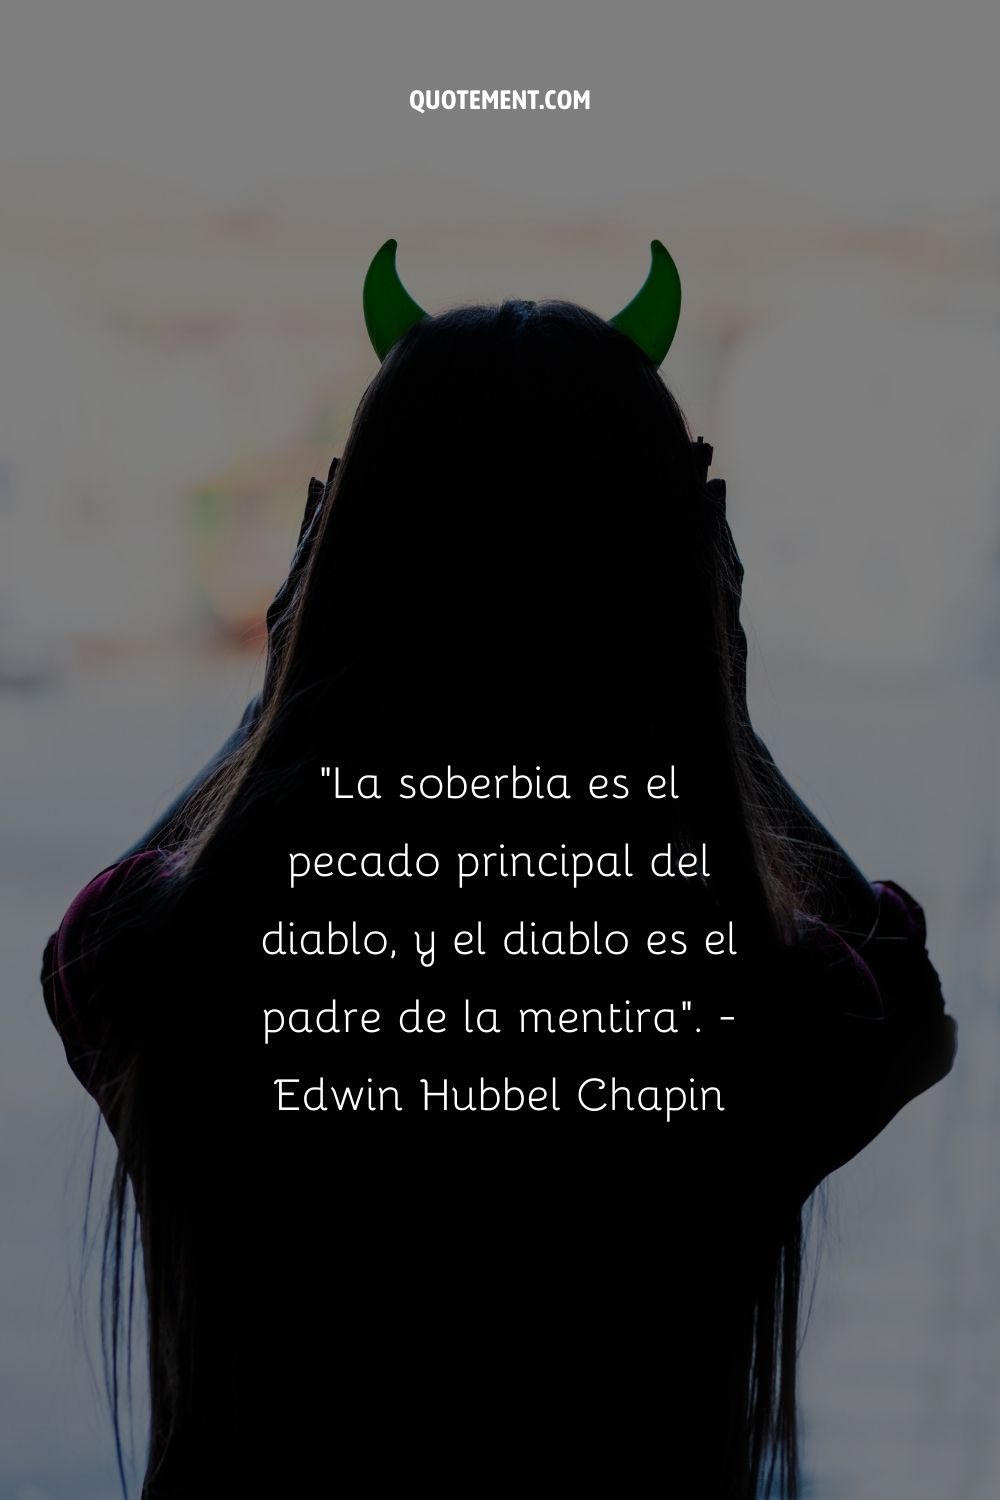 "El orgullo es el pecado principal del diablo, y el diablo es el padre de la mentira". - Edwin Hubbel Chapin